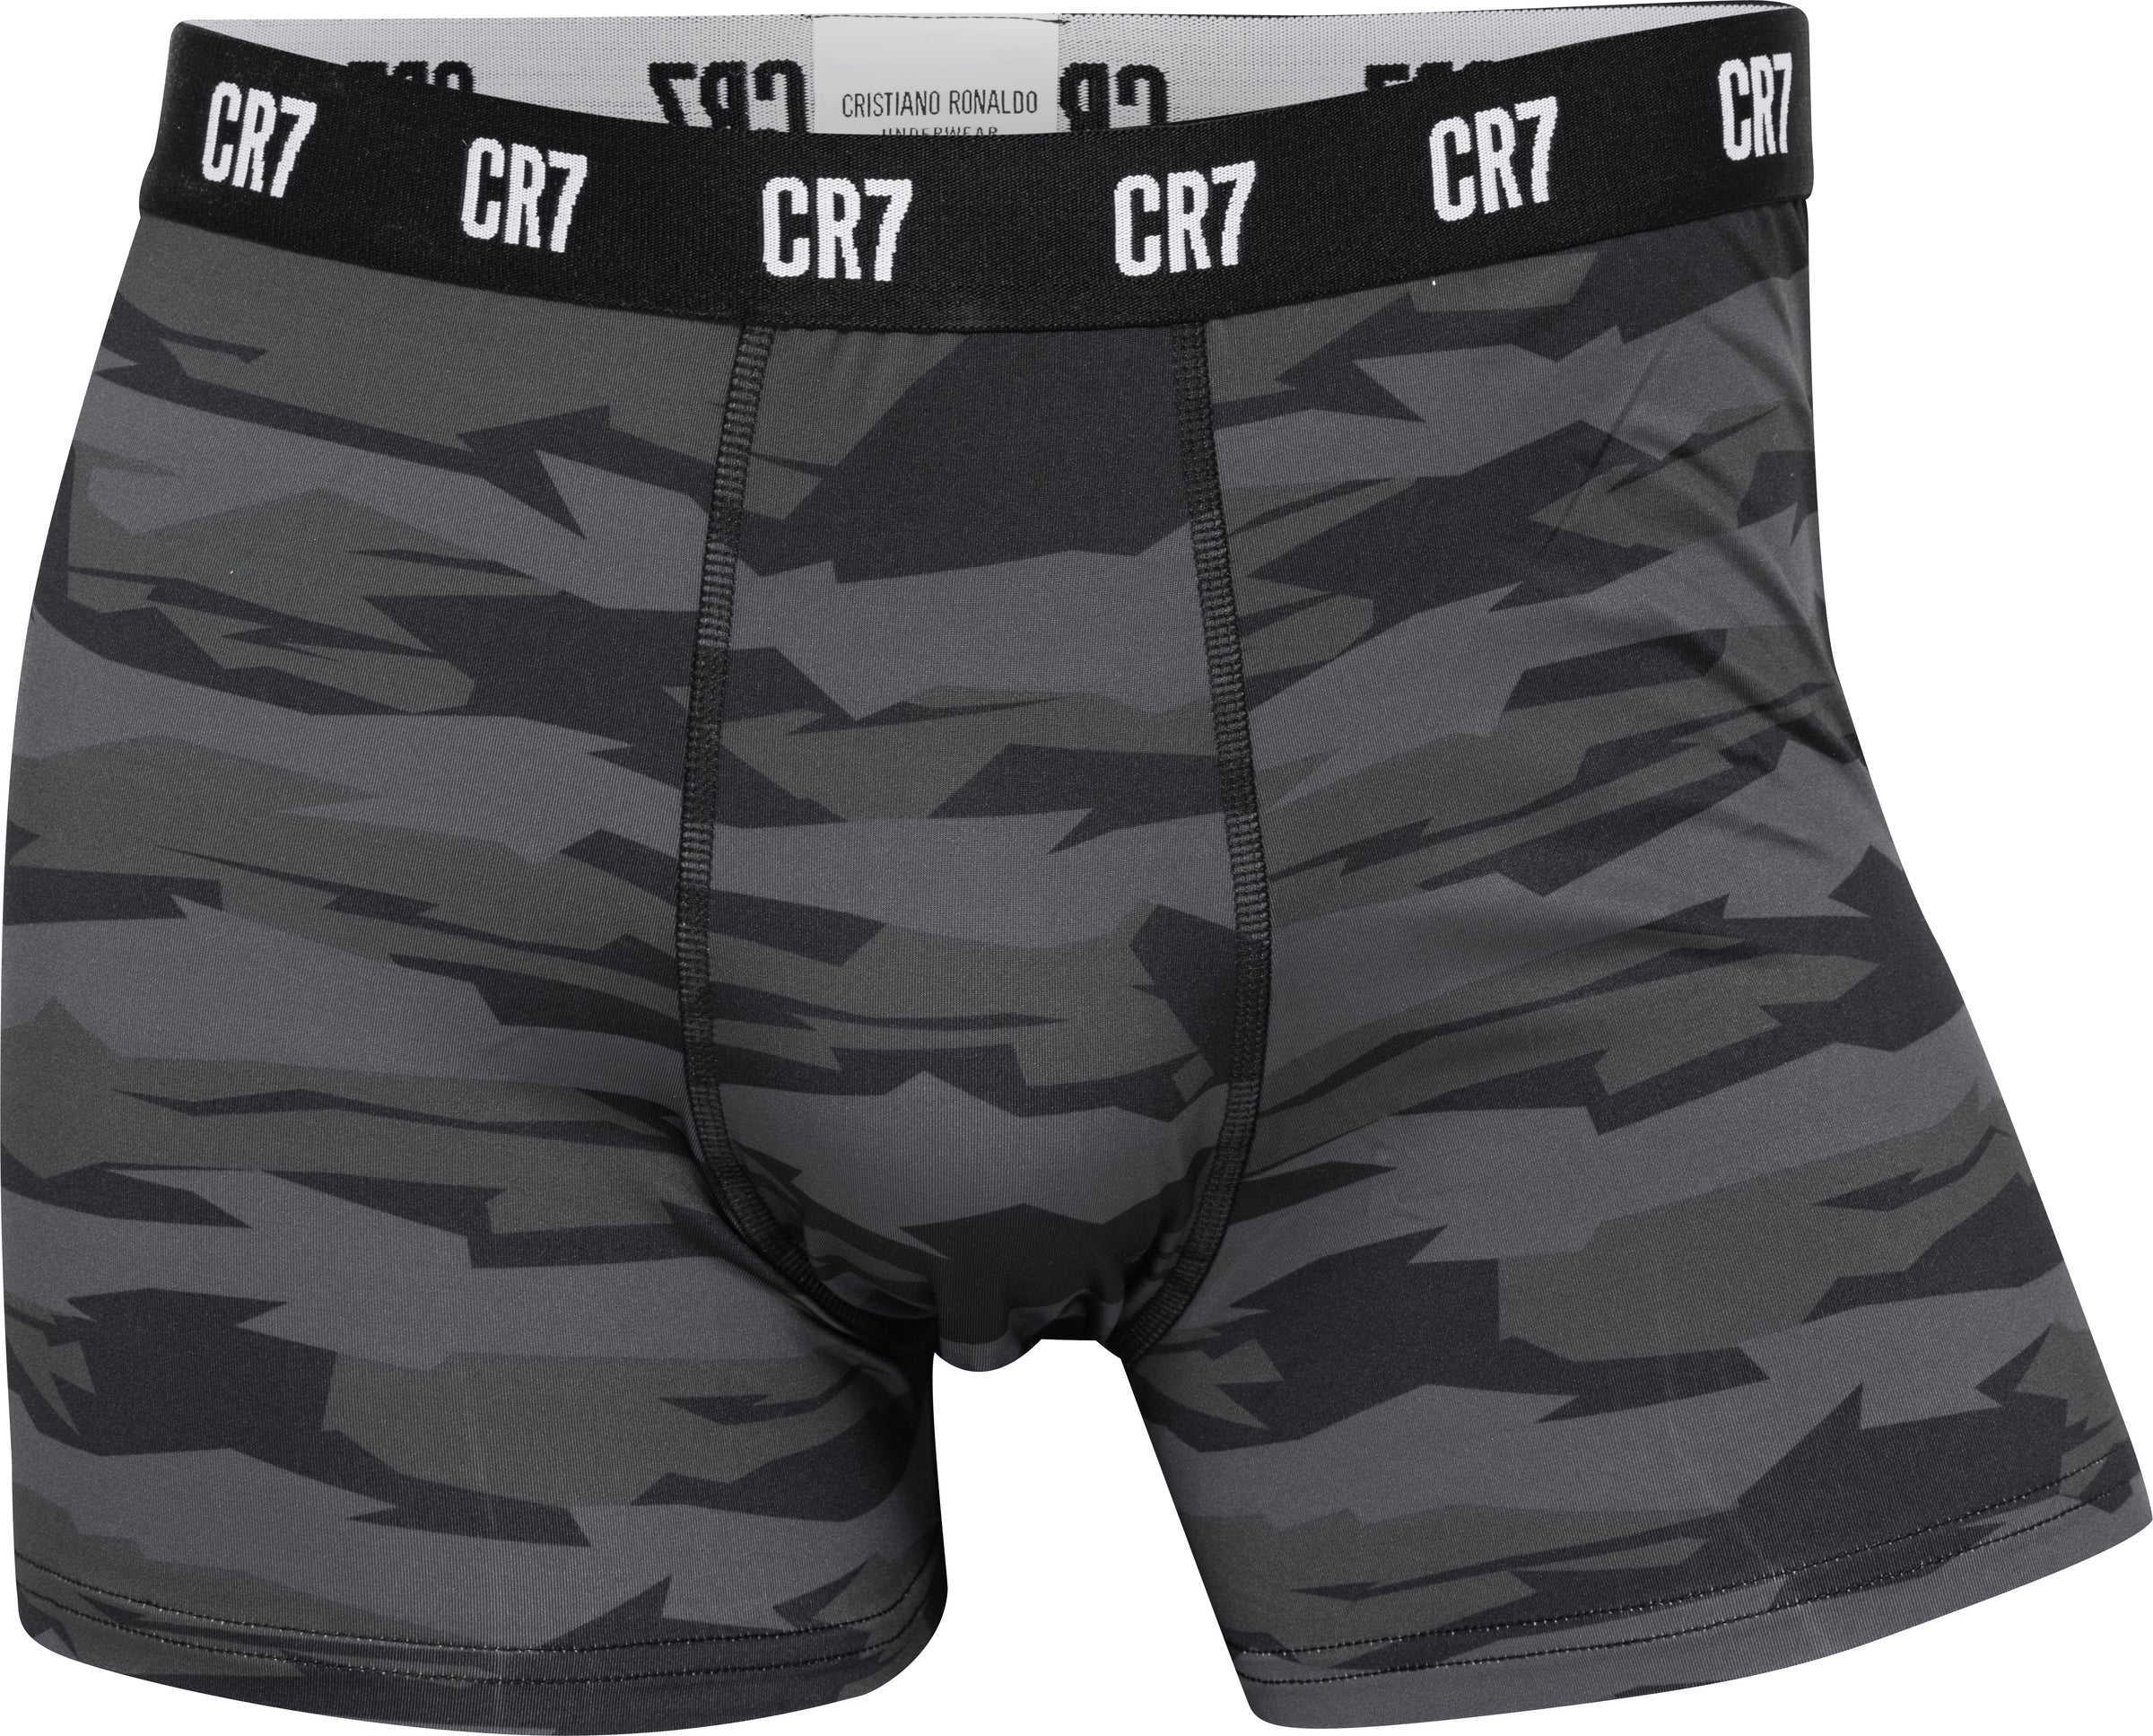 CR7 Cristiano Ronaldo Men's Trunks, Black, Grey, Blue, XL price in